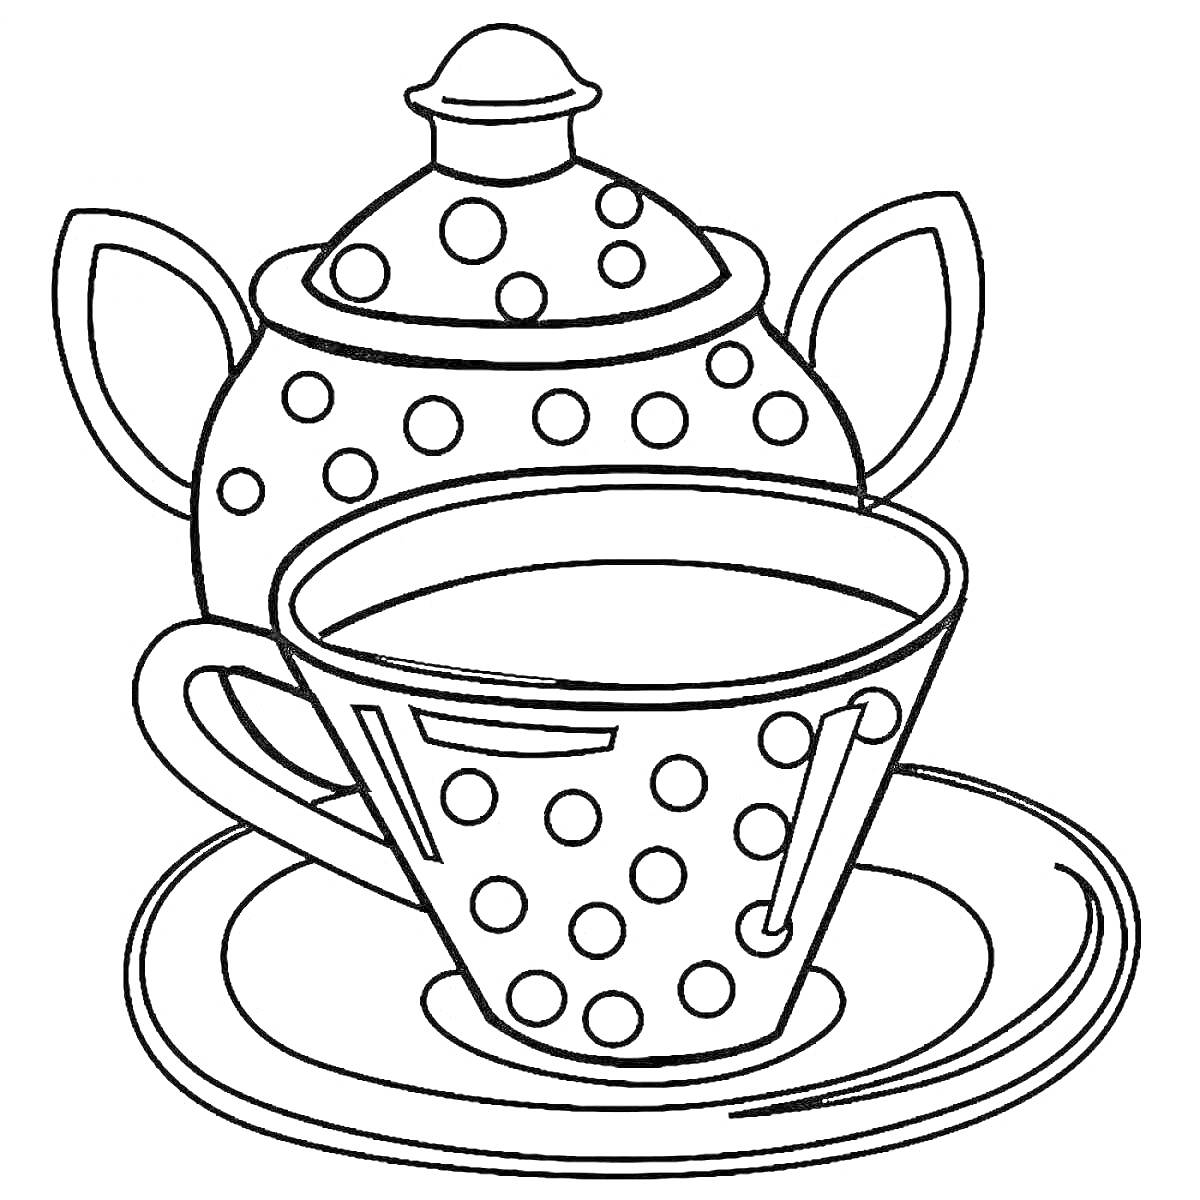 Раскраска Чашка с блюдцем и чайник с крышкой в горошек